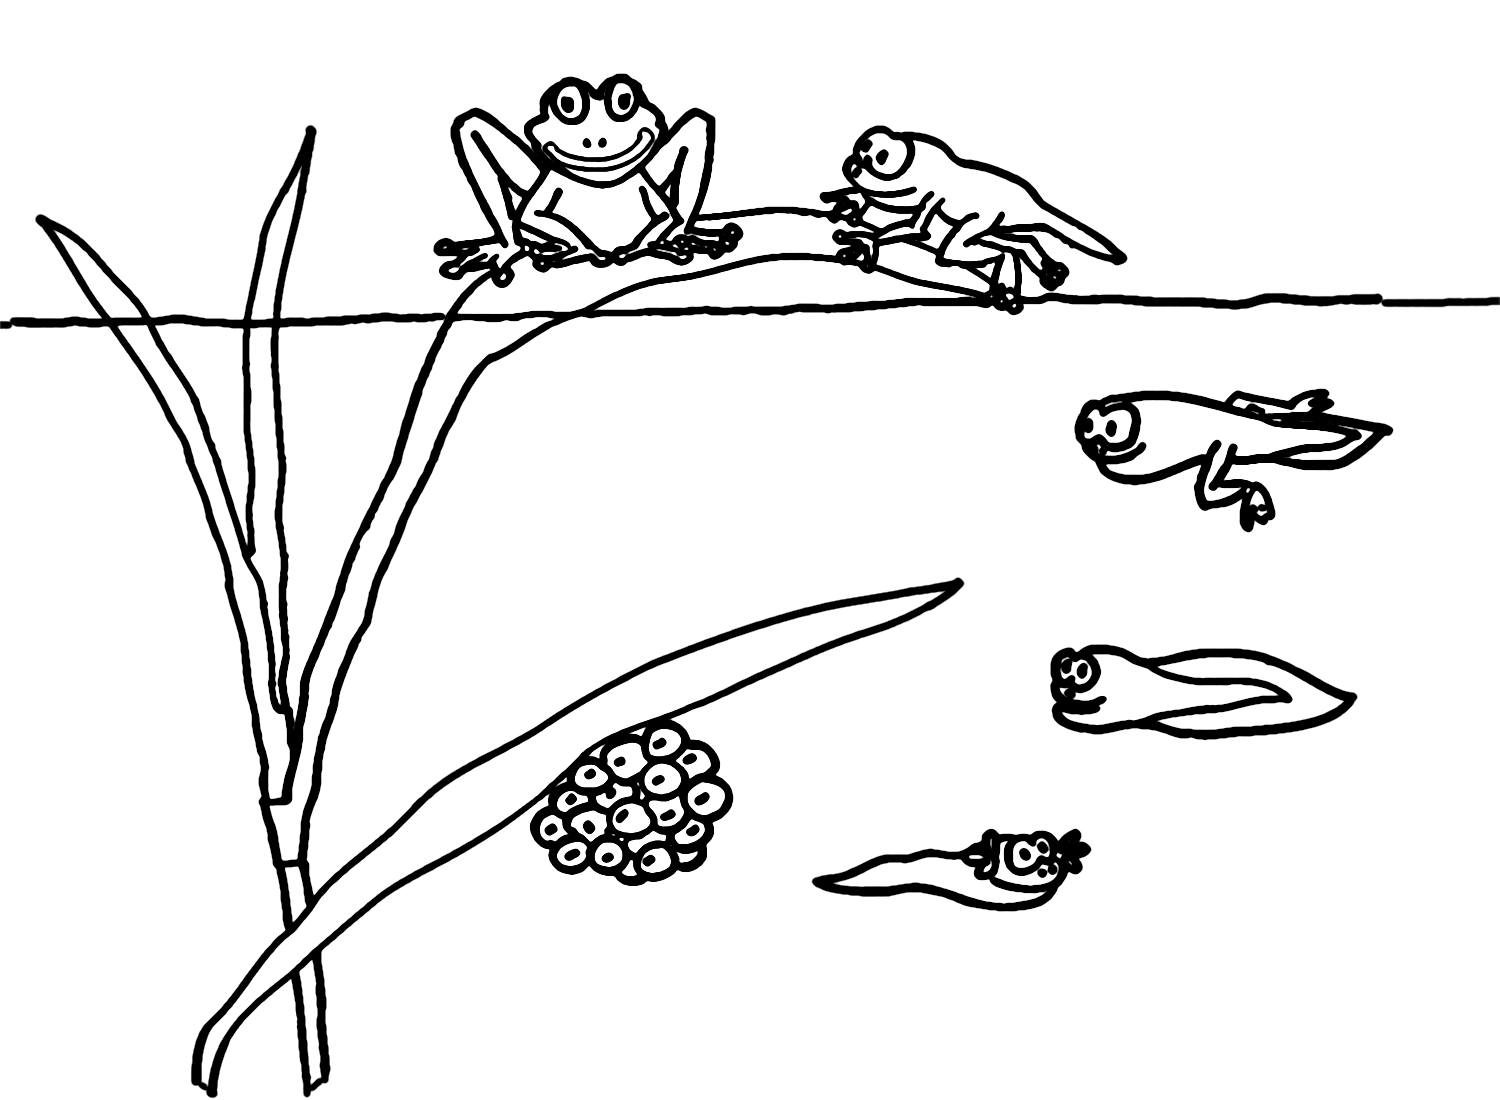 青蛙蝌蚪的生命周期